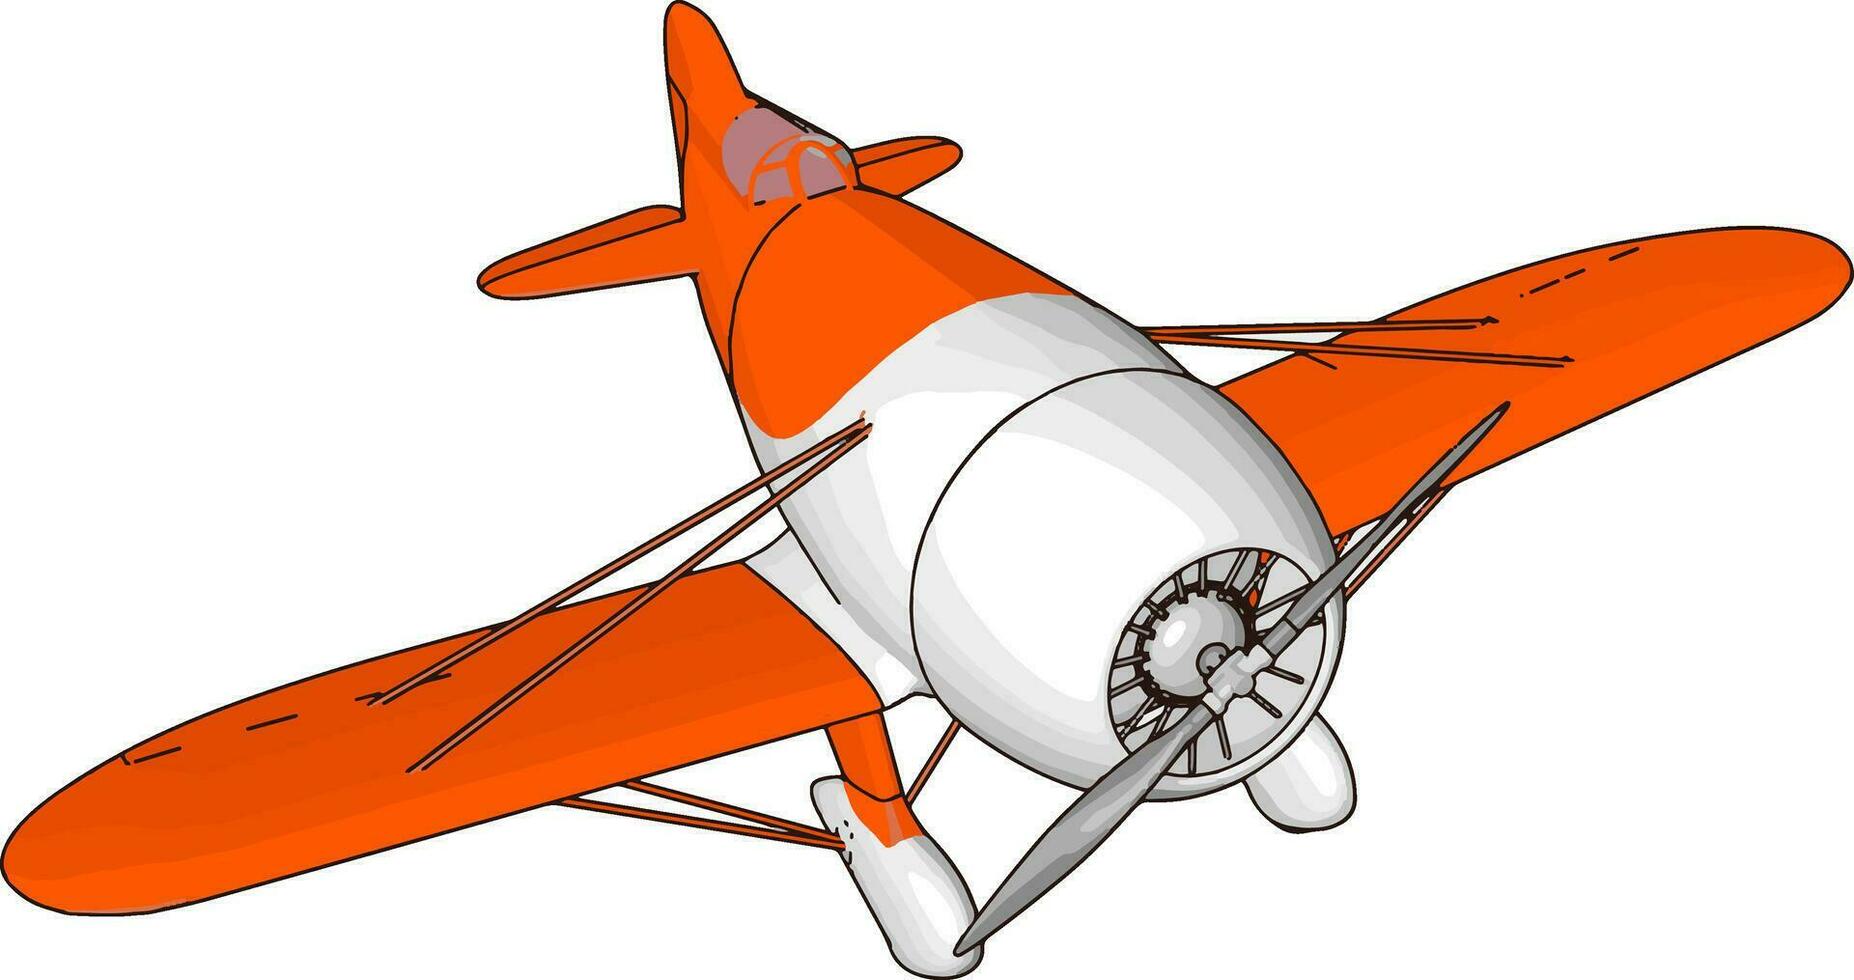 Viejo avión retro blanco y rojo, ilustración, vector sobre fondo blanco.